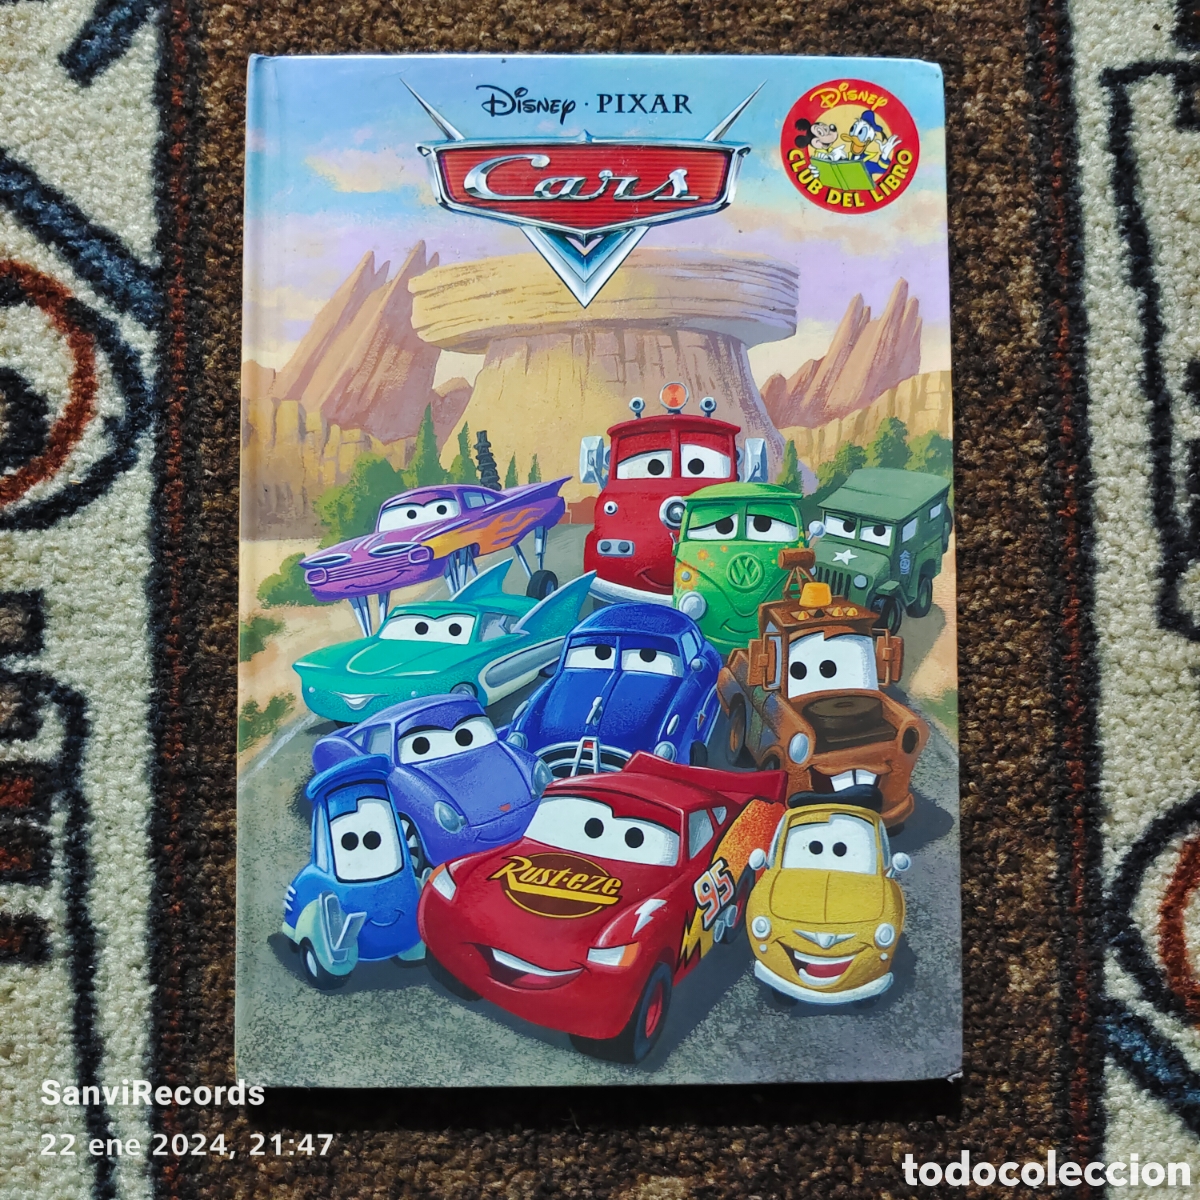 disney pixar club del libro: cars (salvat) - Acquista Libri usati di fiabe  e racconti per bambini su todocoleccion